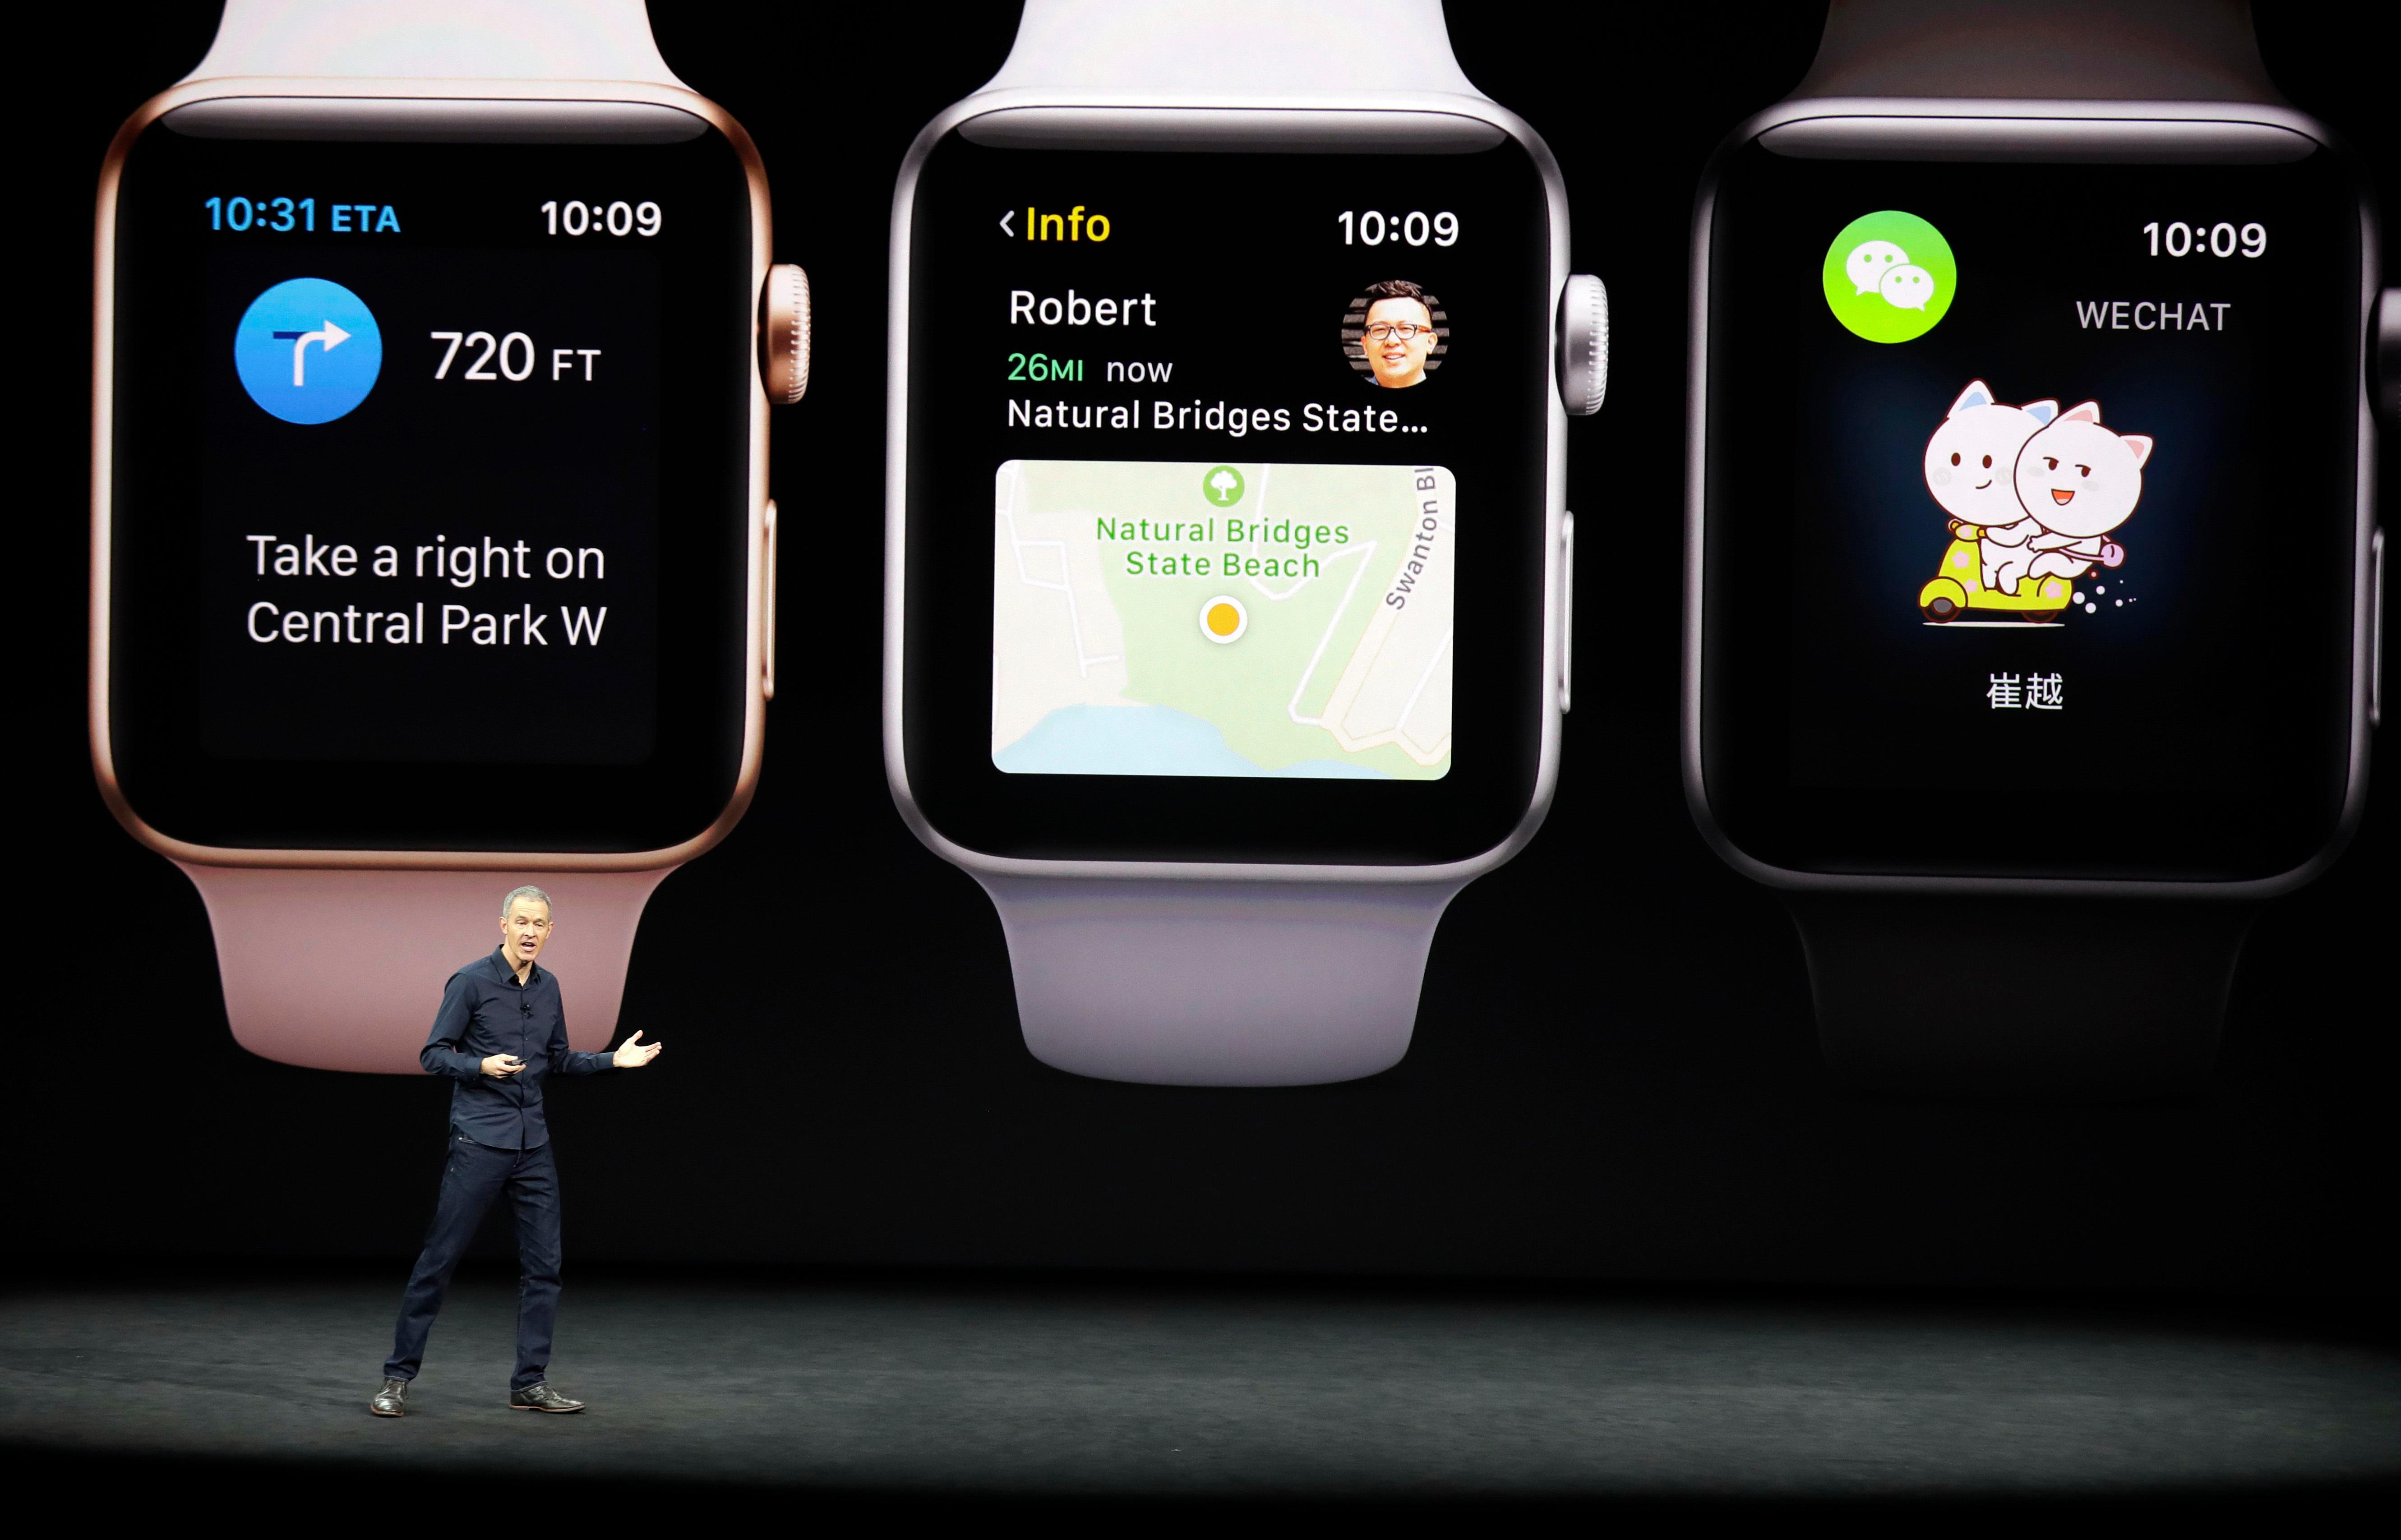  Apple        отказывается говорить, сколько часов он продает, но утверждает, что является одним из крупнейших производителей